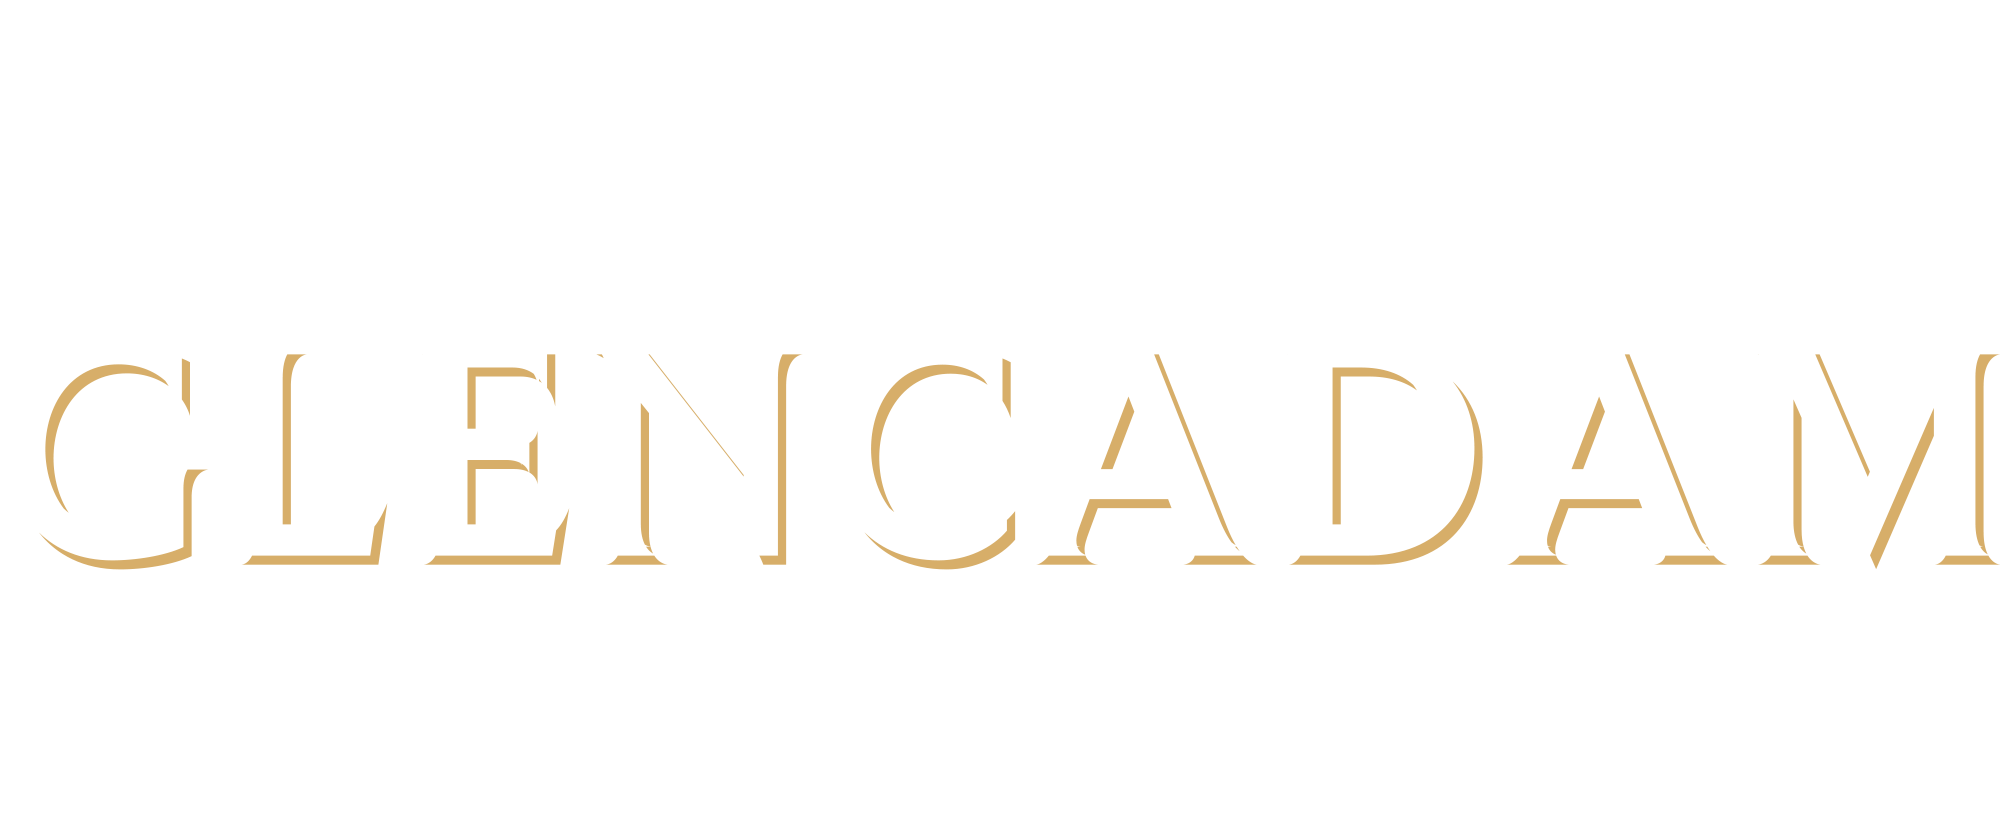 Angus Dundee Distillers Glencadam Whisky